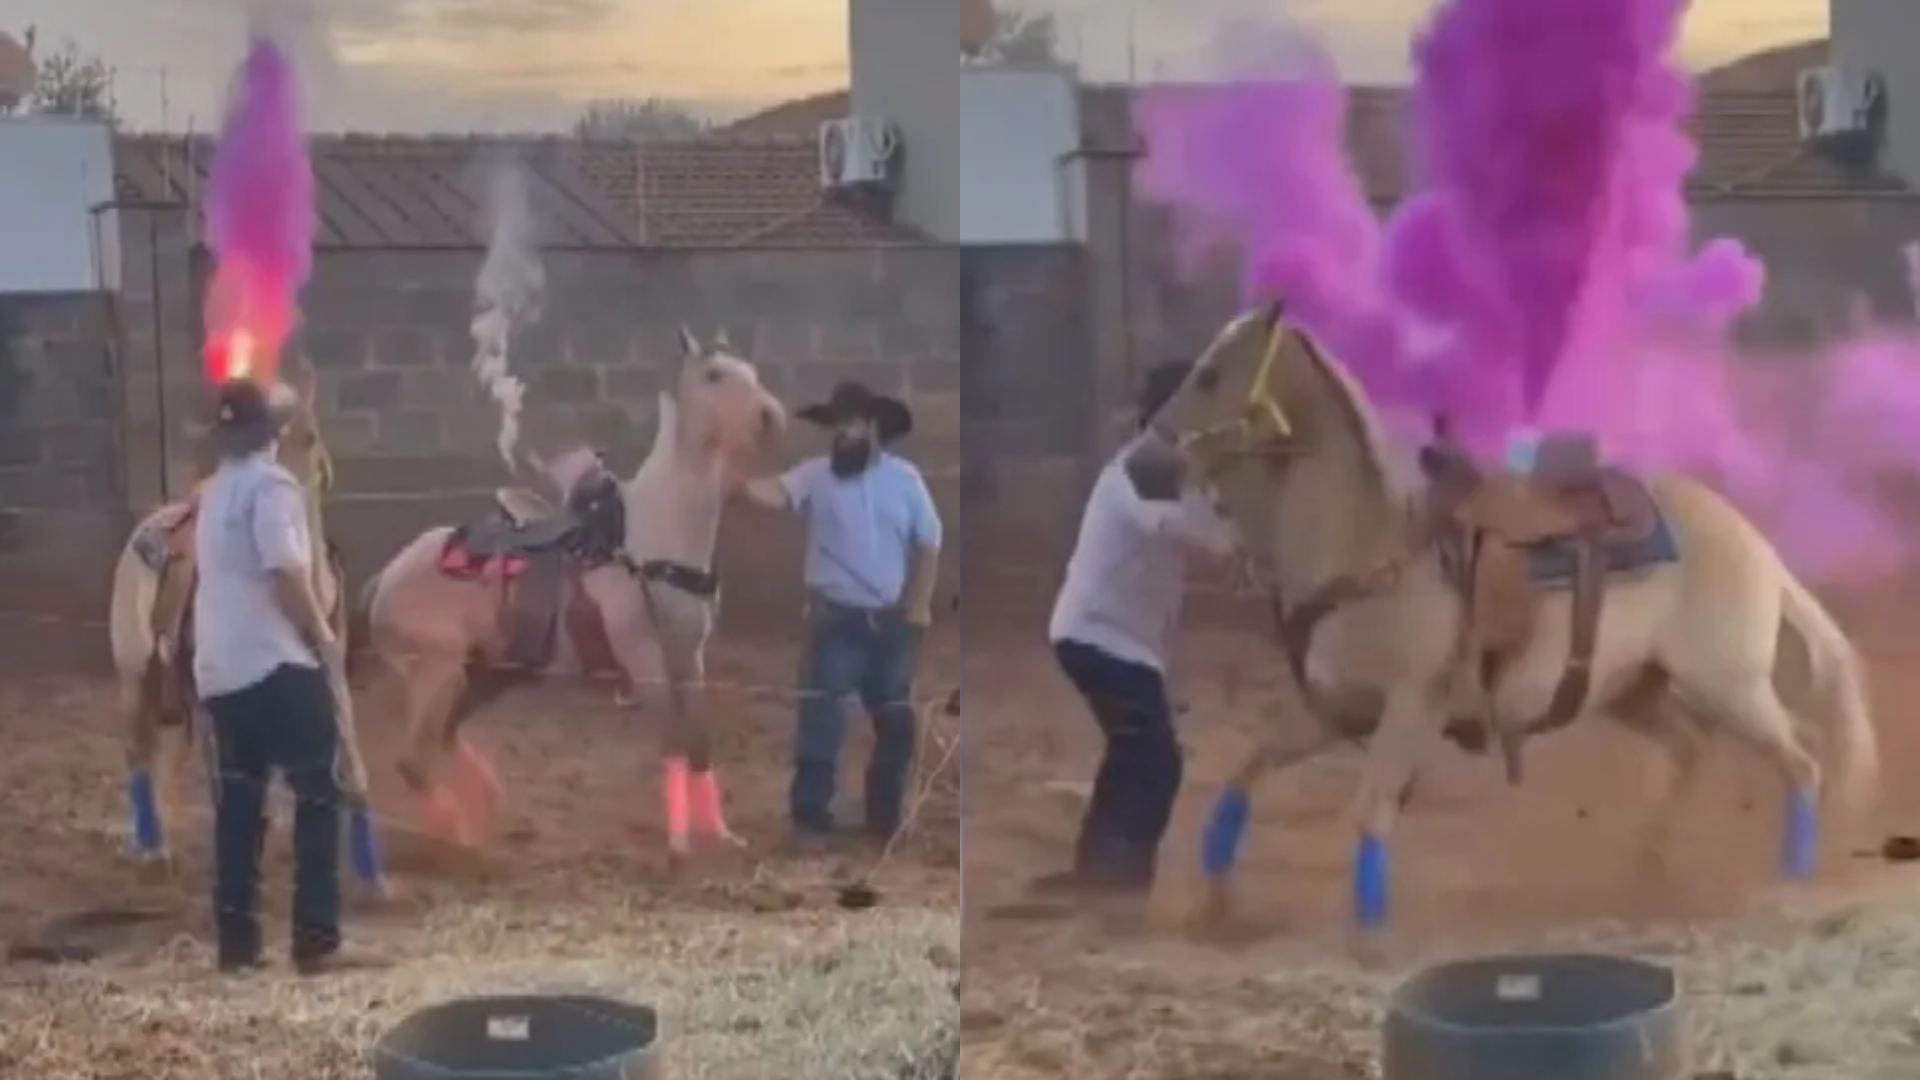 Vídeo de chá revelação com cavalos em Goiás gera revolta, e polícia investiga maus-tratos